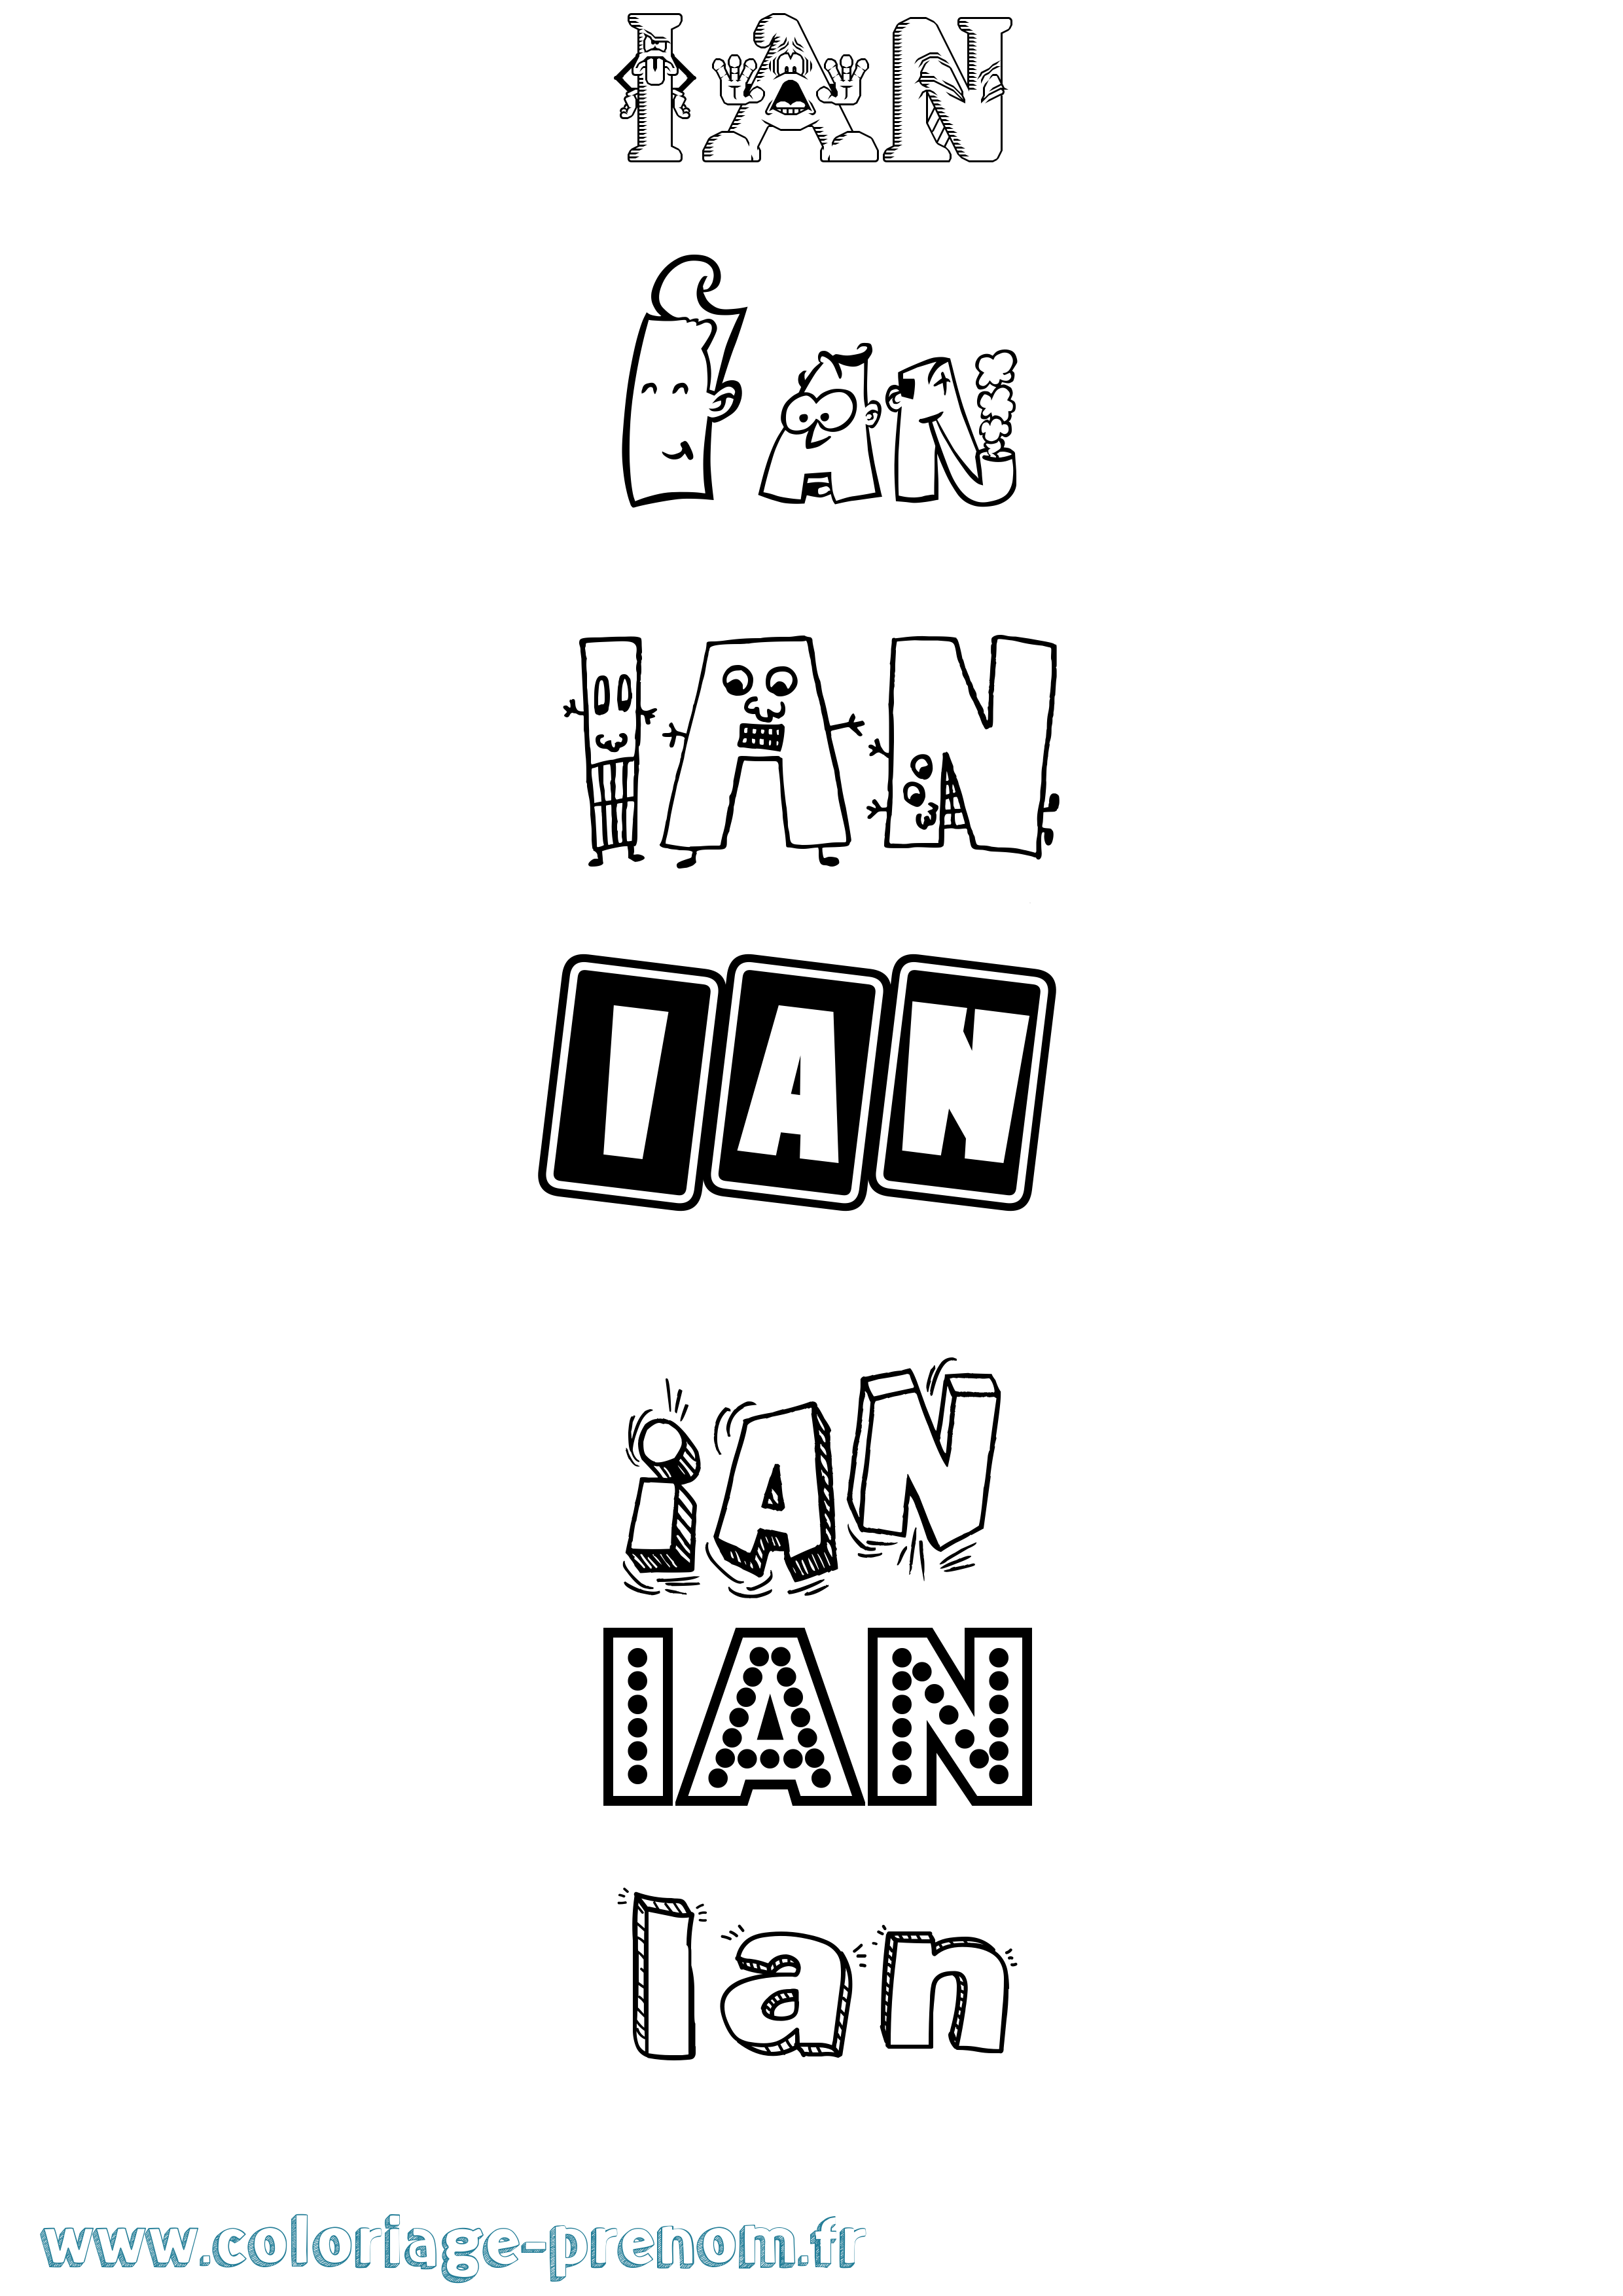 Coloriage prénom Ian Fun